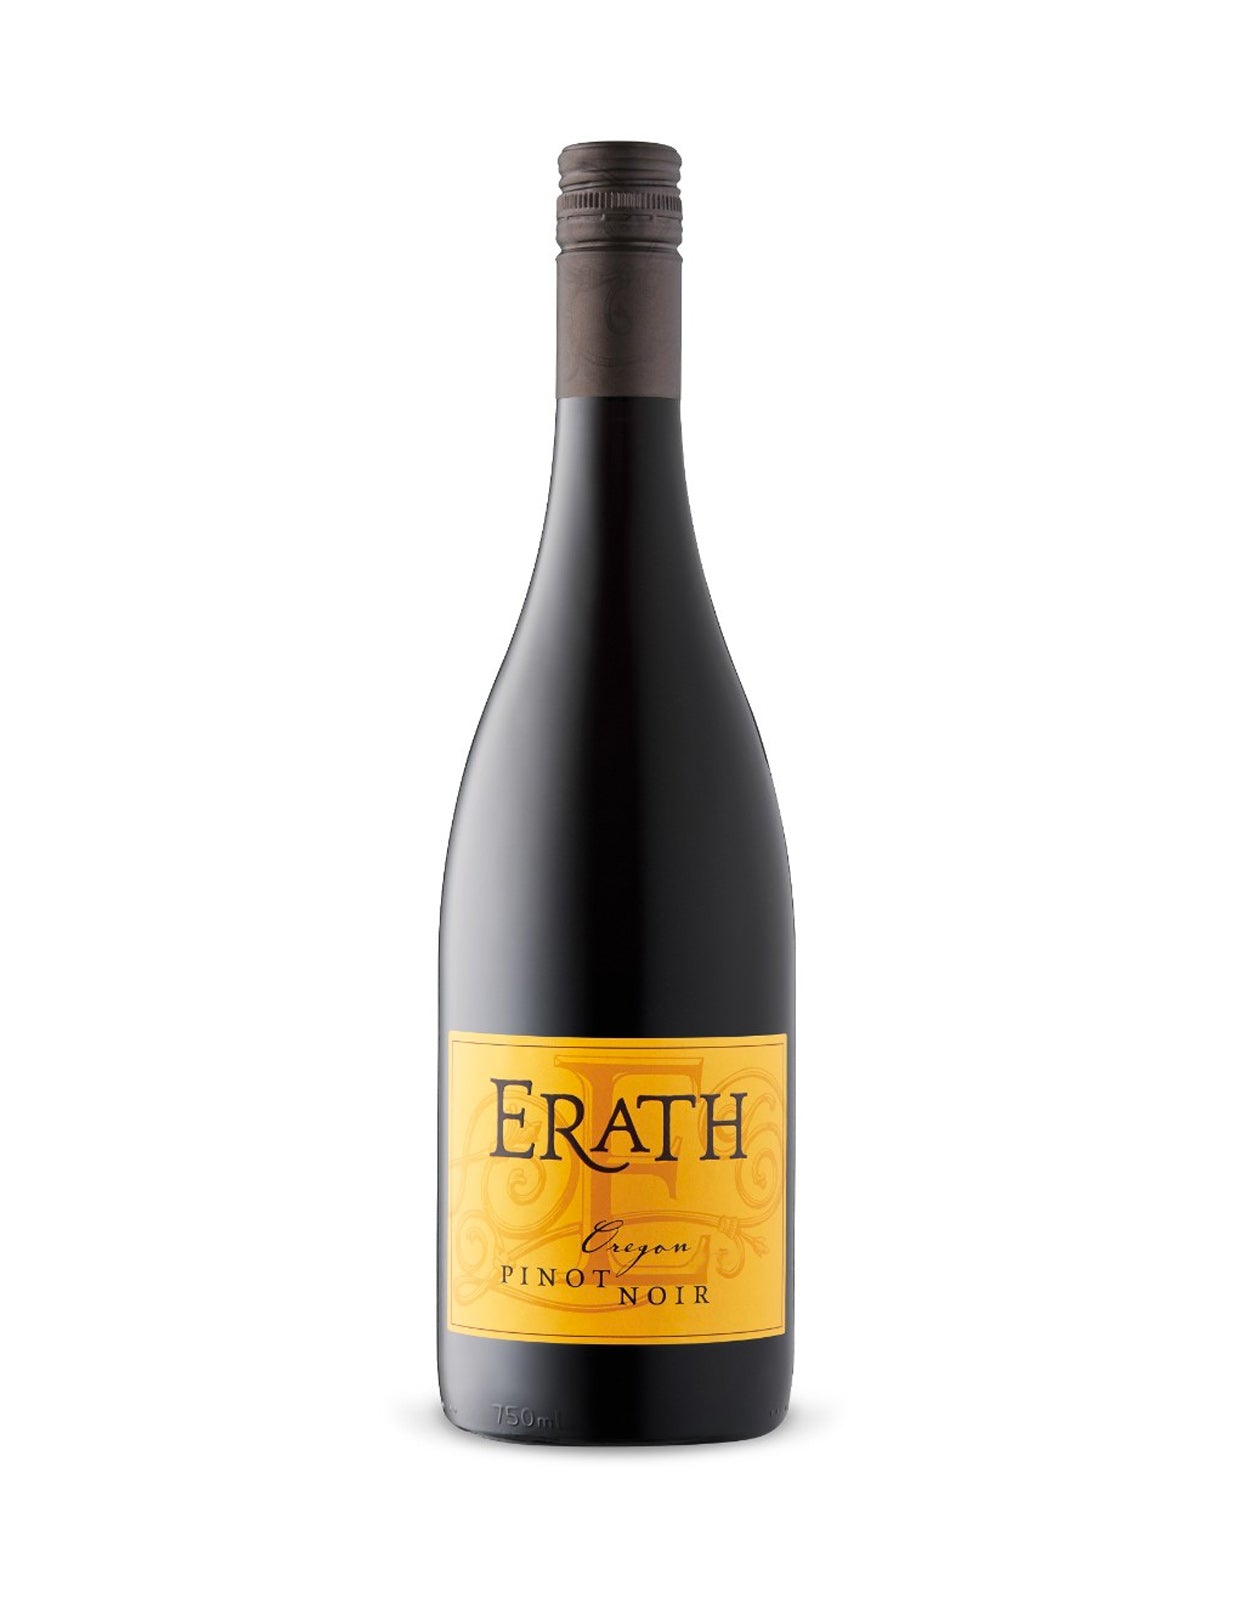 Erath Pinot Noir Leland 2018